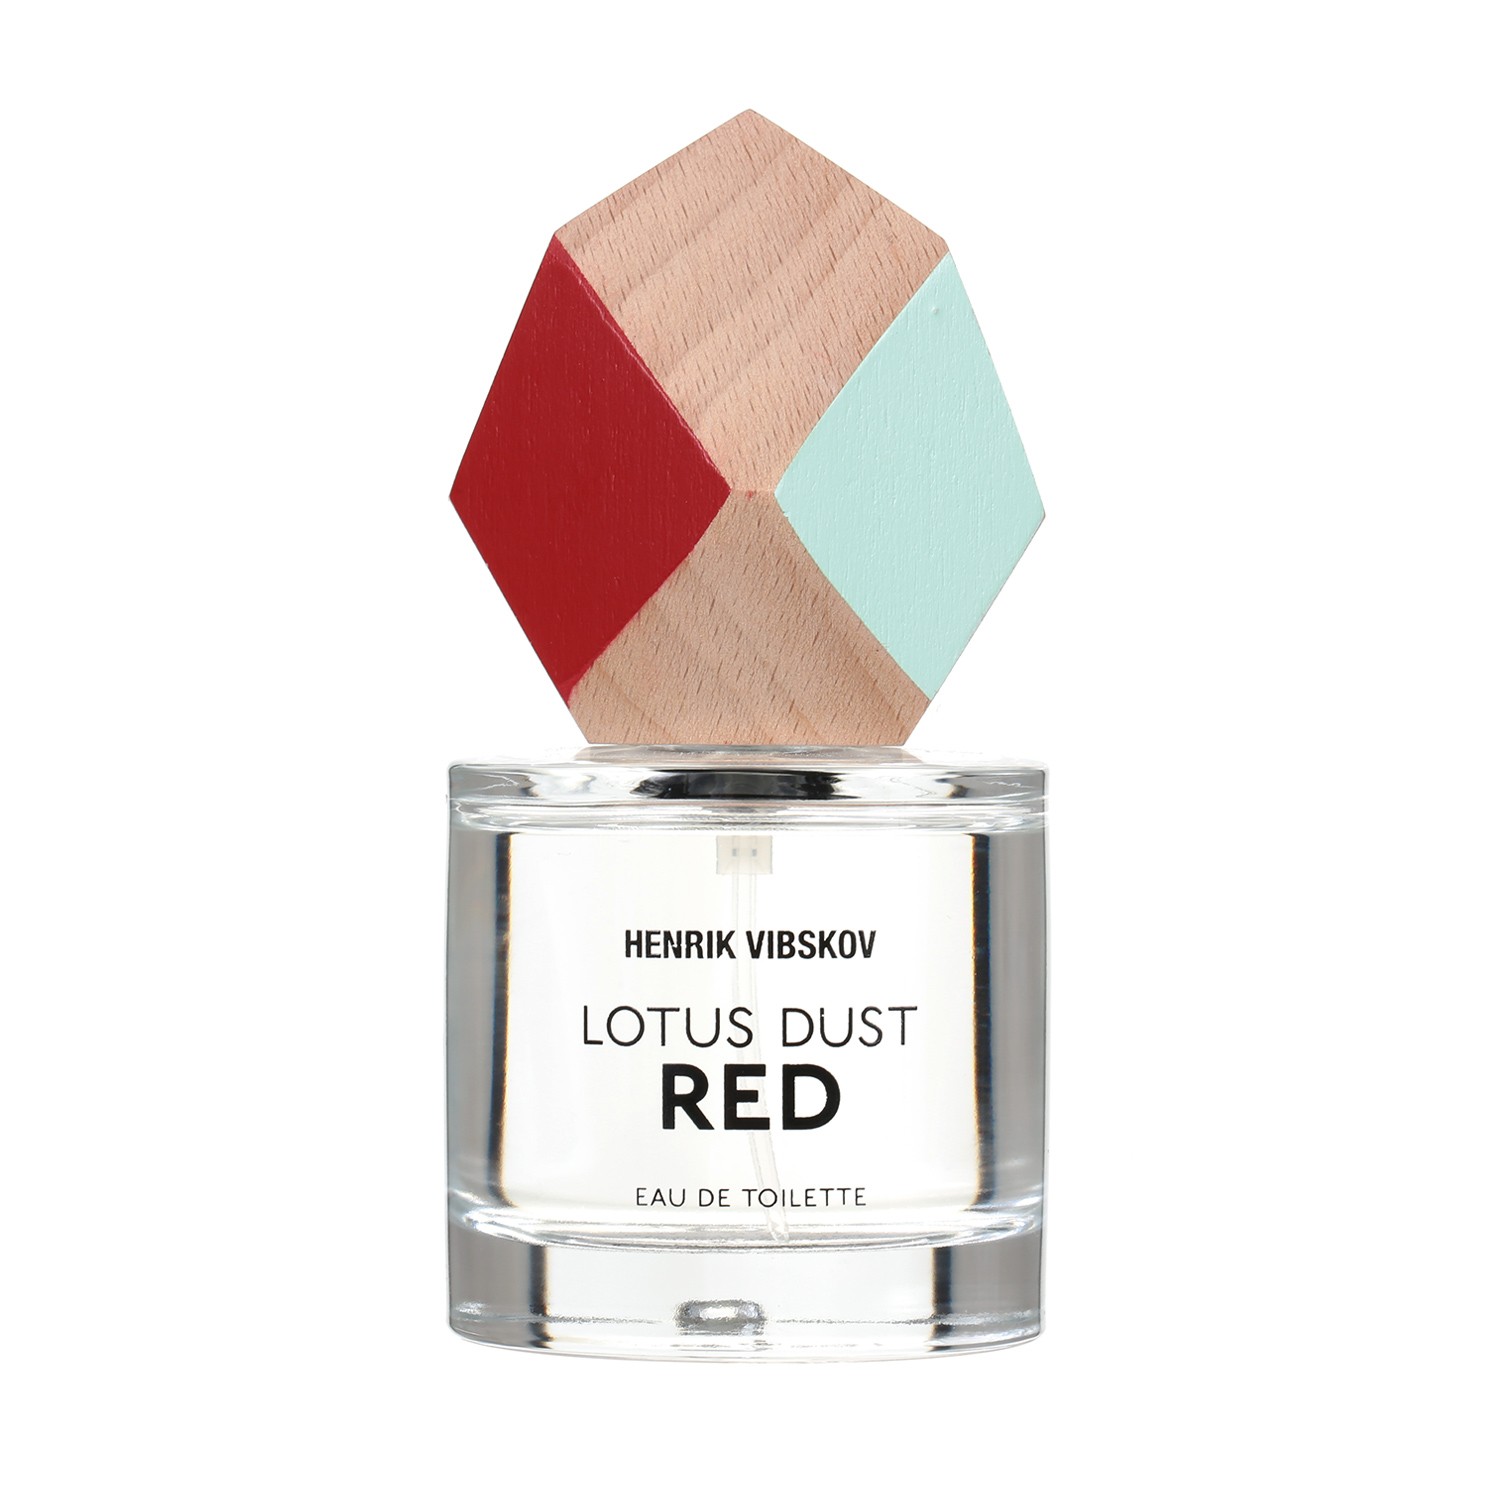 Lotus Dust Henrik Vibskov perfume - a fragrance for women 2016